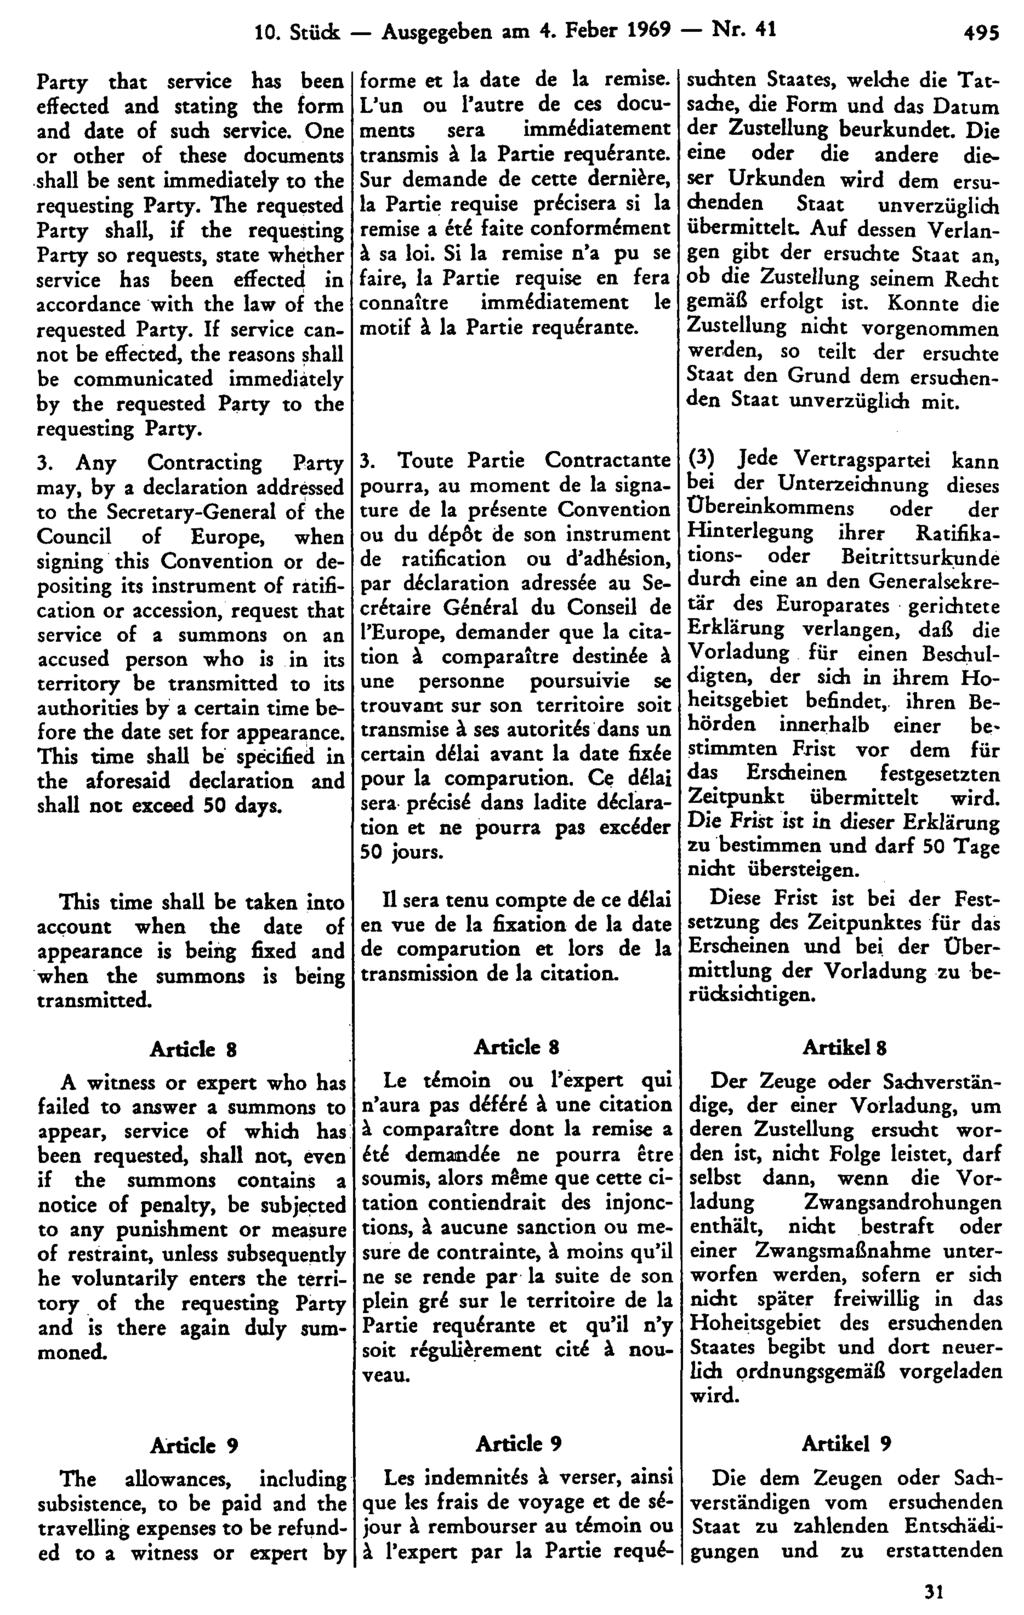 10. Stück Ausgegeben am 4. Feber 1969 Nr. 41 495 suchten Staates, welche die Tatsache, die Form und das Datum der Zustellung beurkundet.